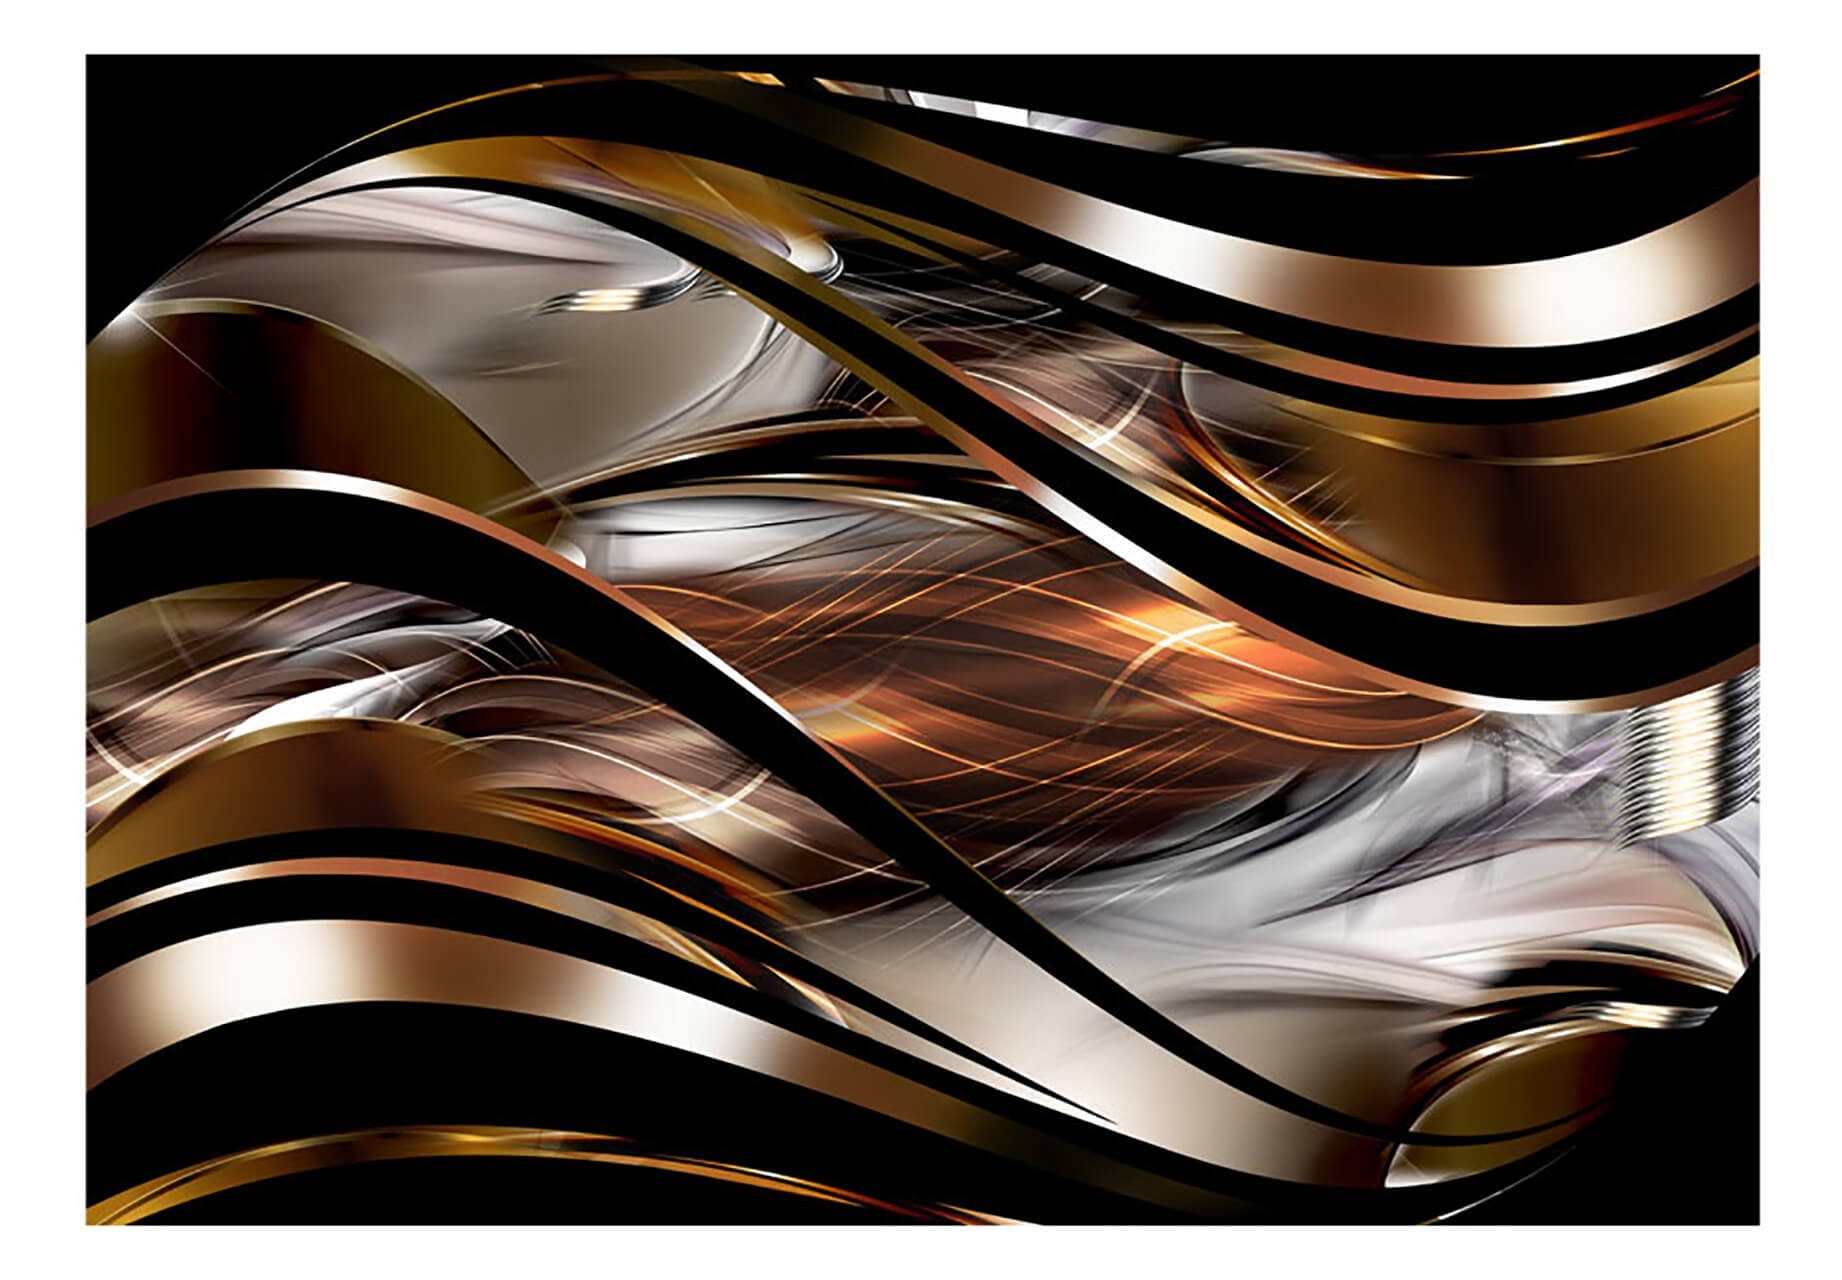 KUNSTLOFT Vliestapete Copper Tides 3x2.1 m, halb-matt, lichtbeständige Design Tapete